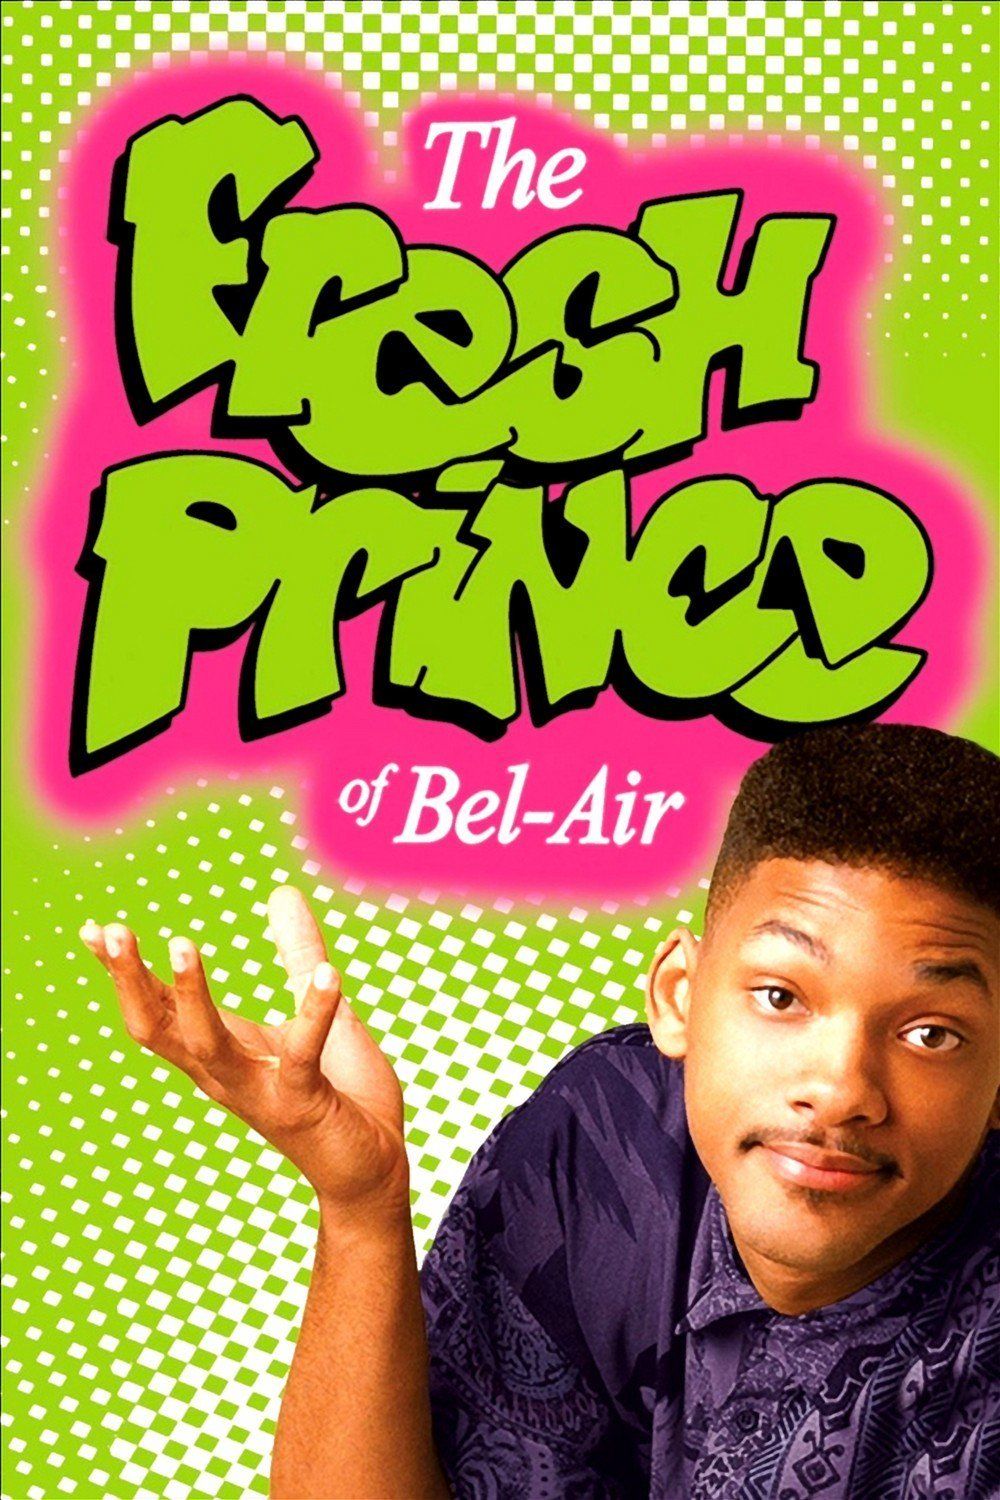 fresh prince of bel air font generator